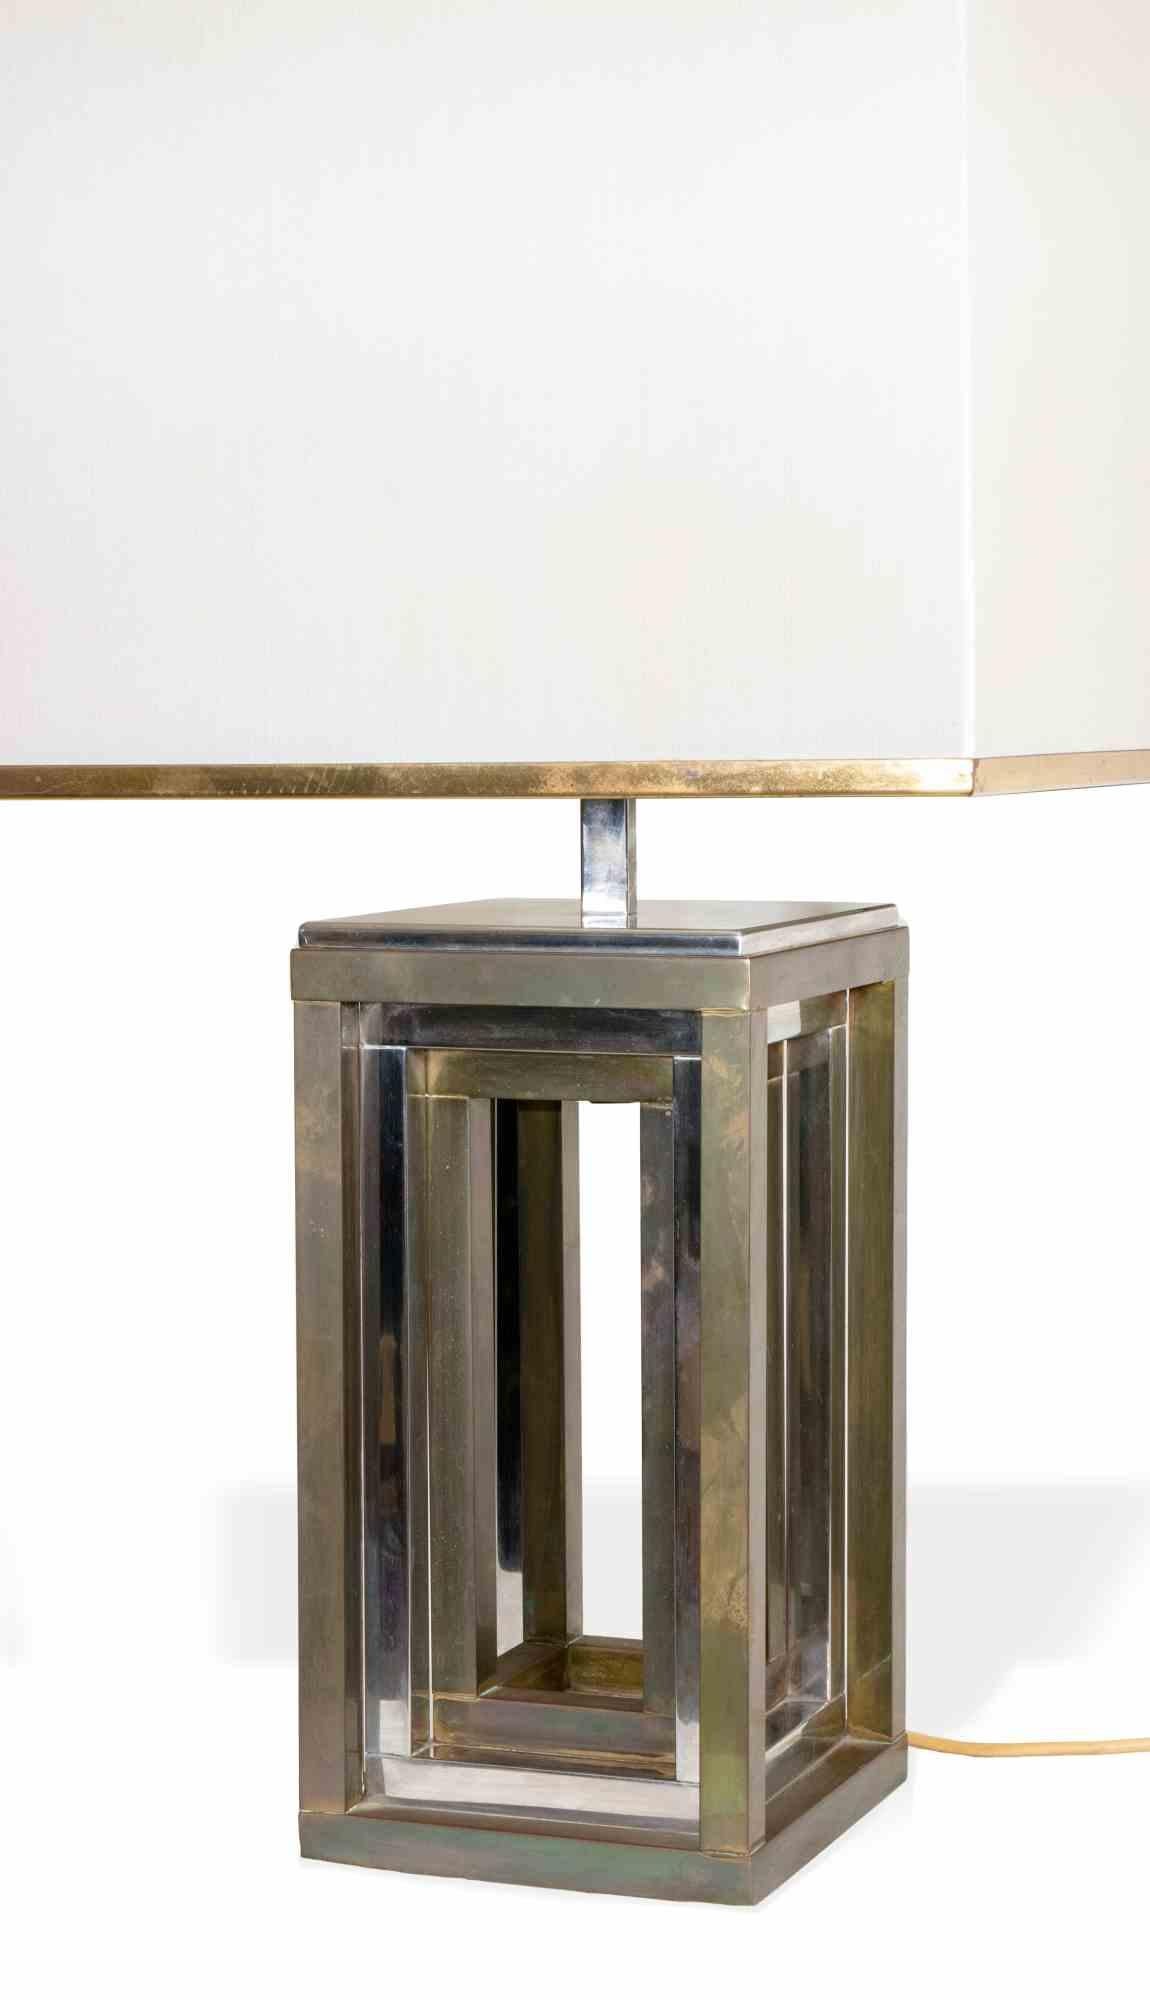 La lampe de table est un objet de design du milieu du siècle dernier réalisé dans les années 1970 et attribué à Romeo Rega (1904-1968).

Lampe en métal.

Romeo Rega (1904-1968) était un designer italien et l'un des nombreux designers des années